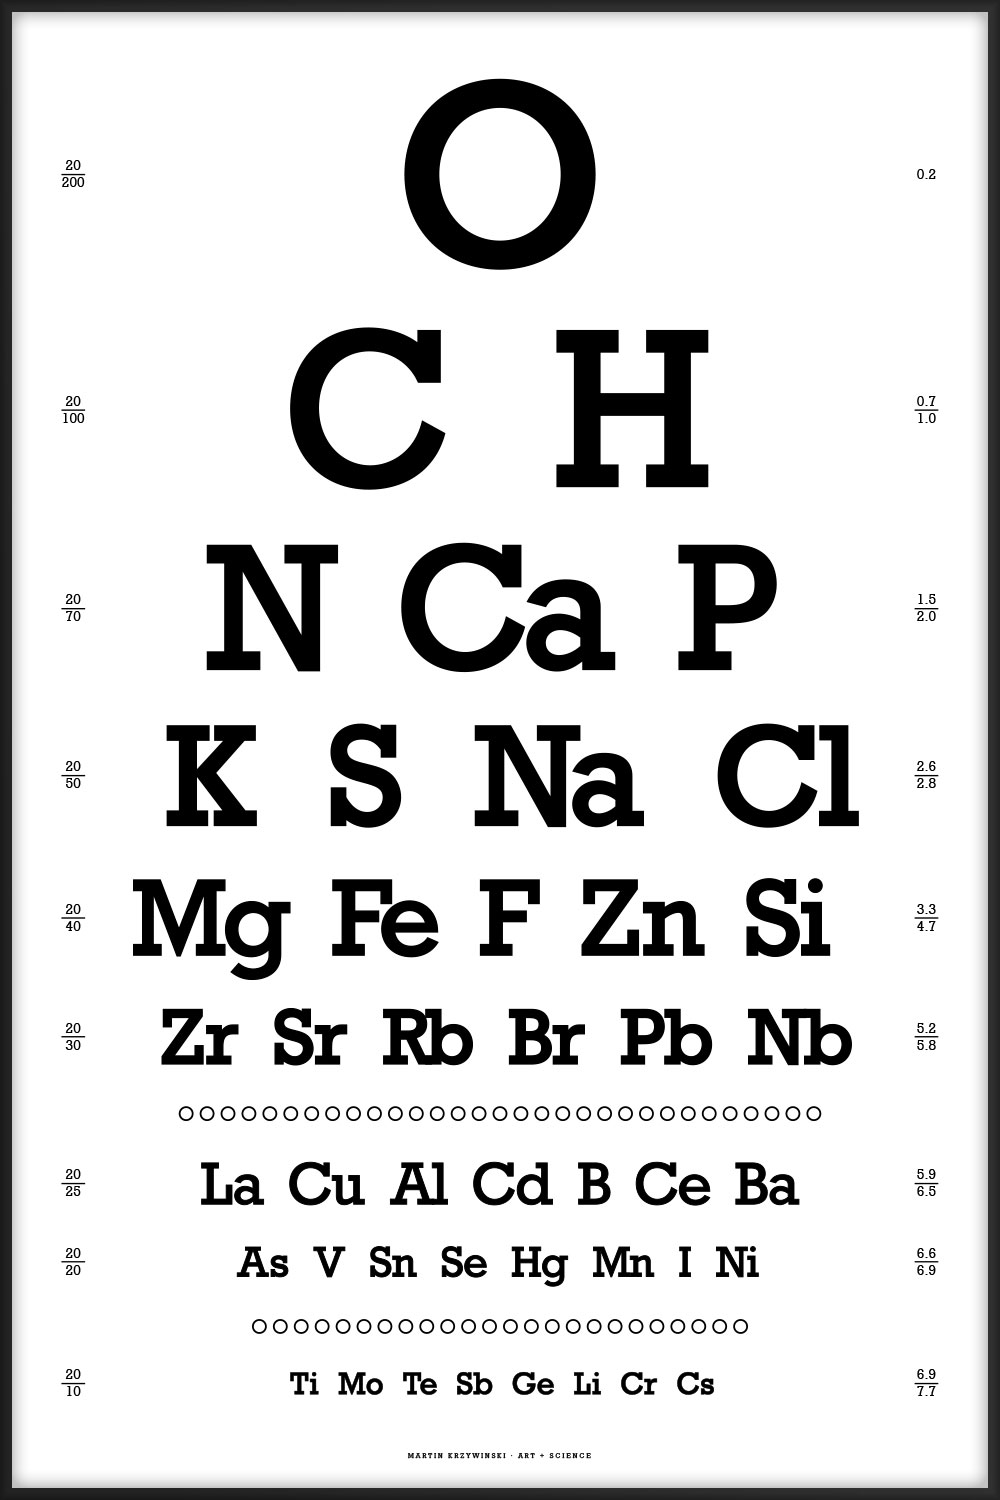 Snellen eye chart — by abundance in the human body by Martin Krzywinski